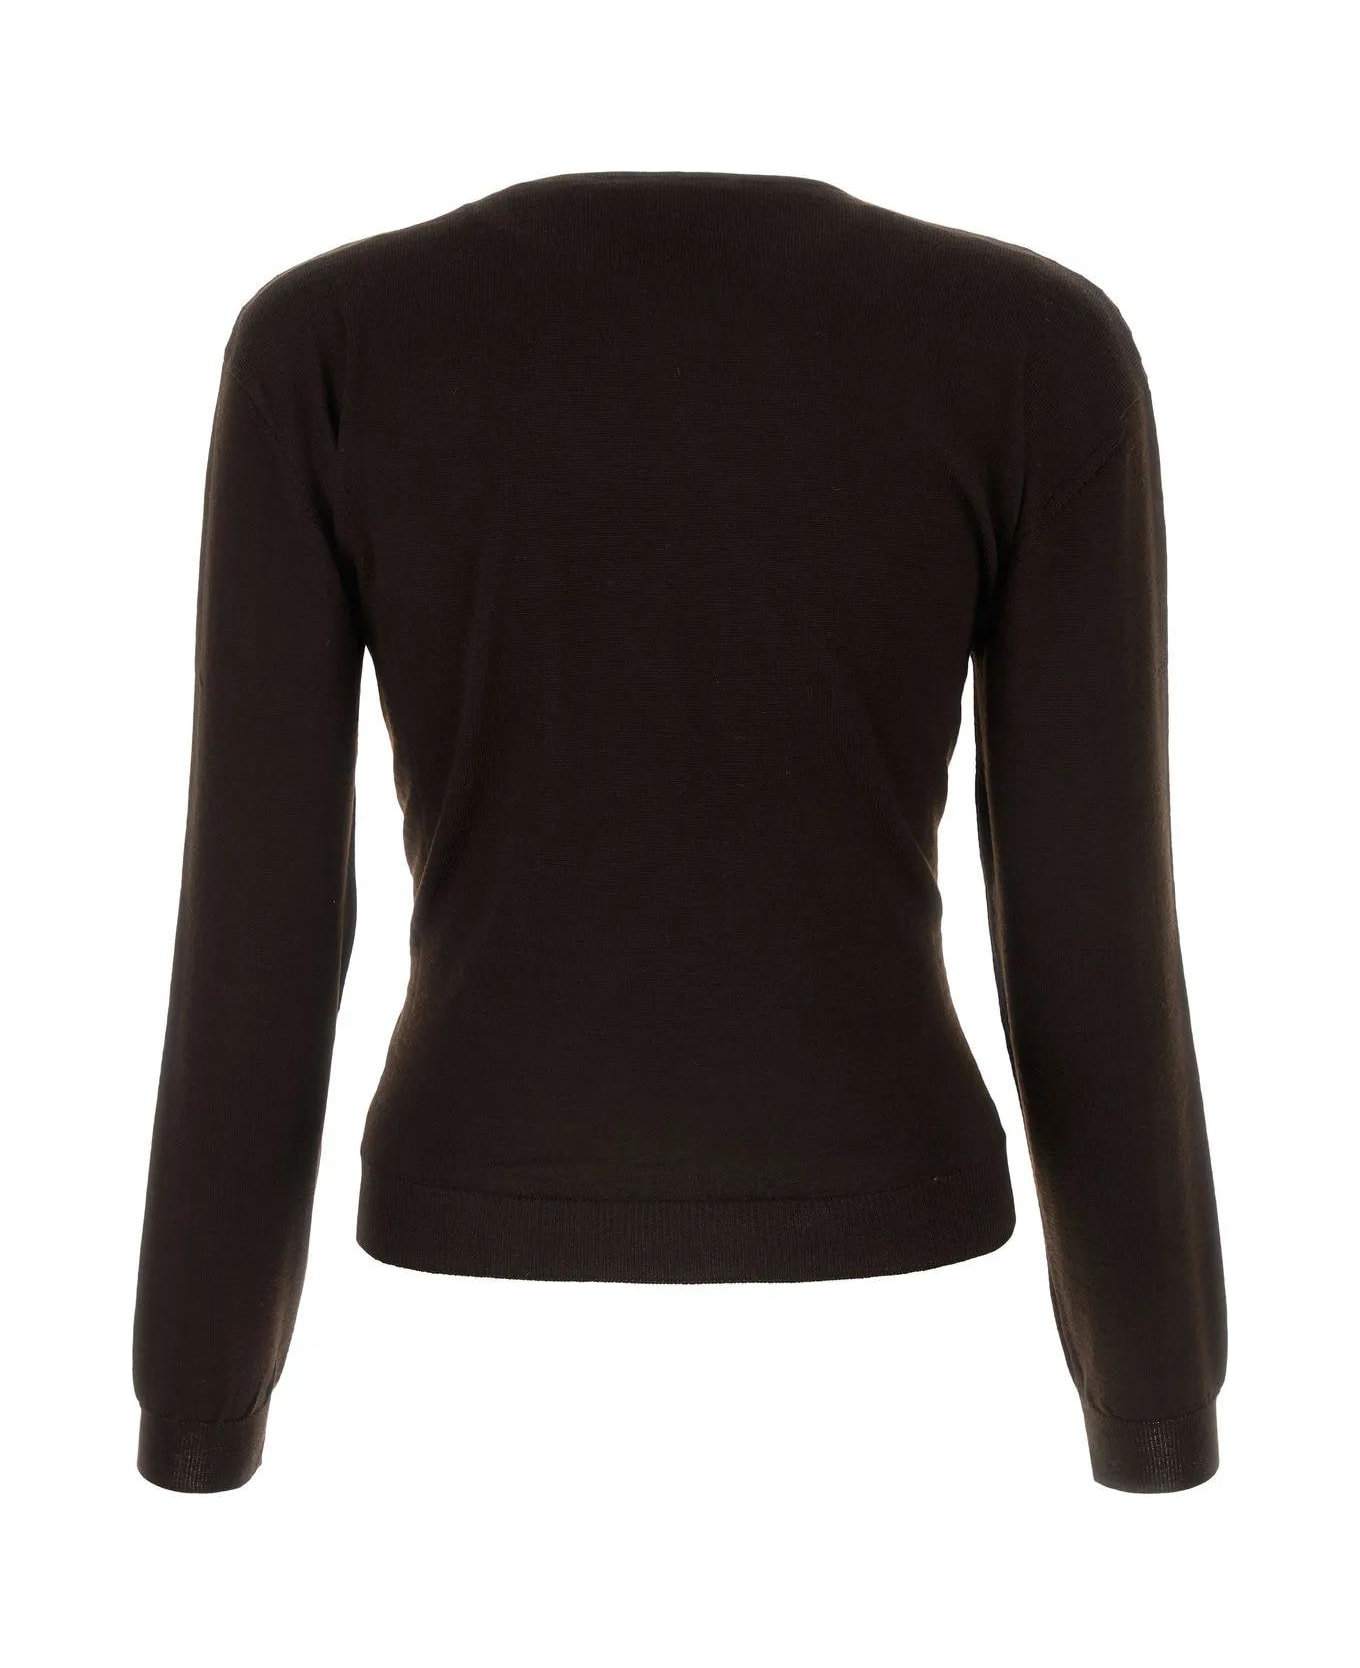 Lemaire Dark Brown Wool Blend Sweater - Pecan Brown